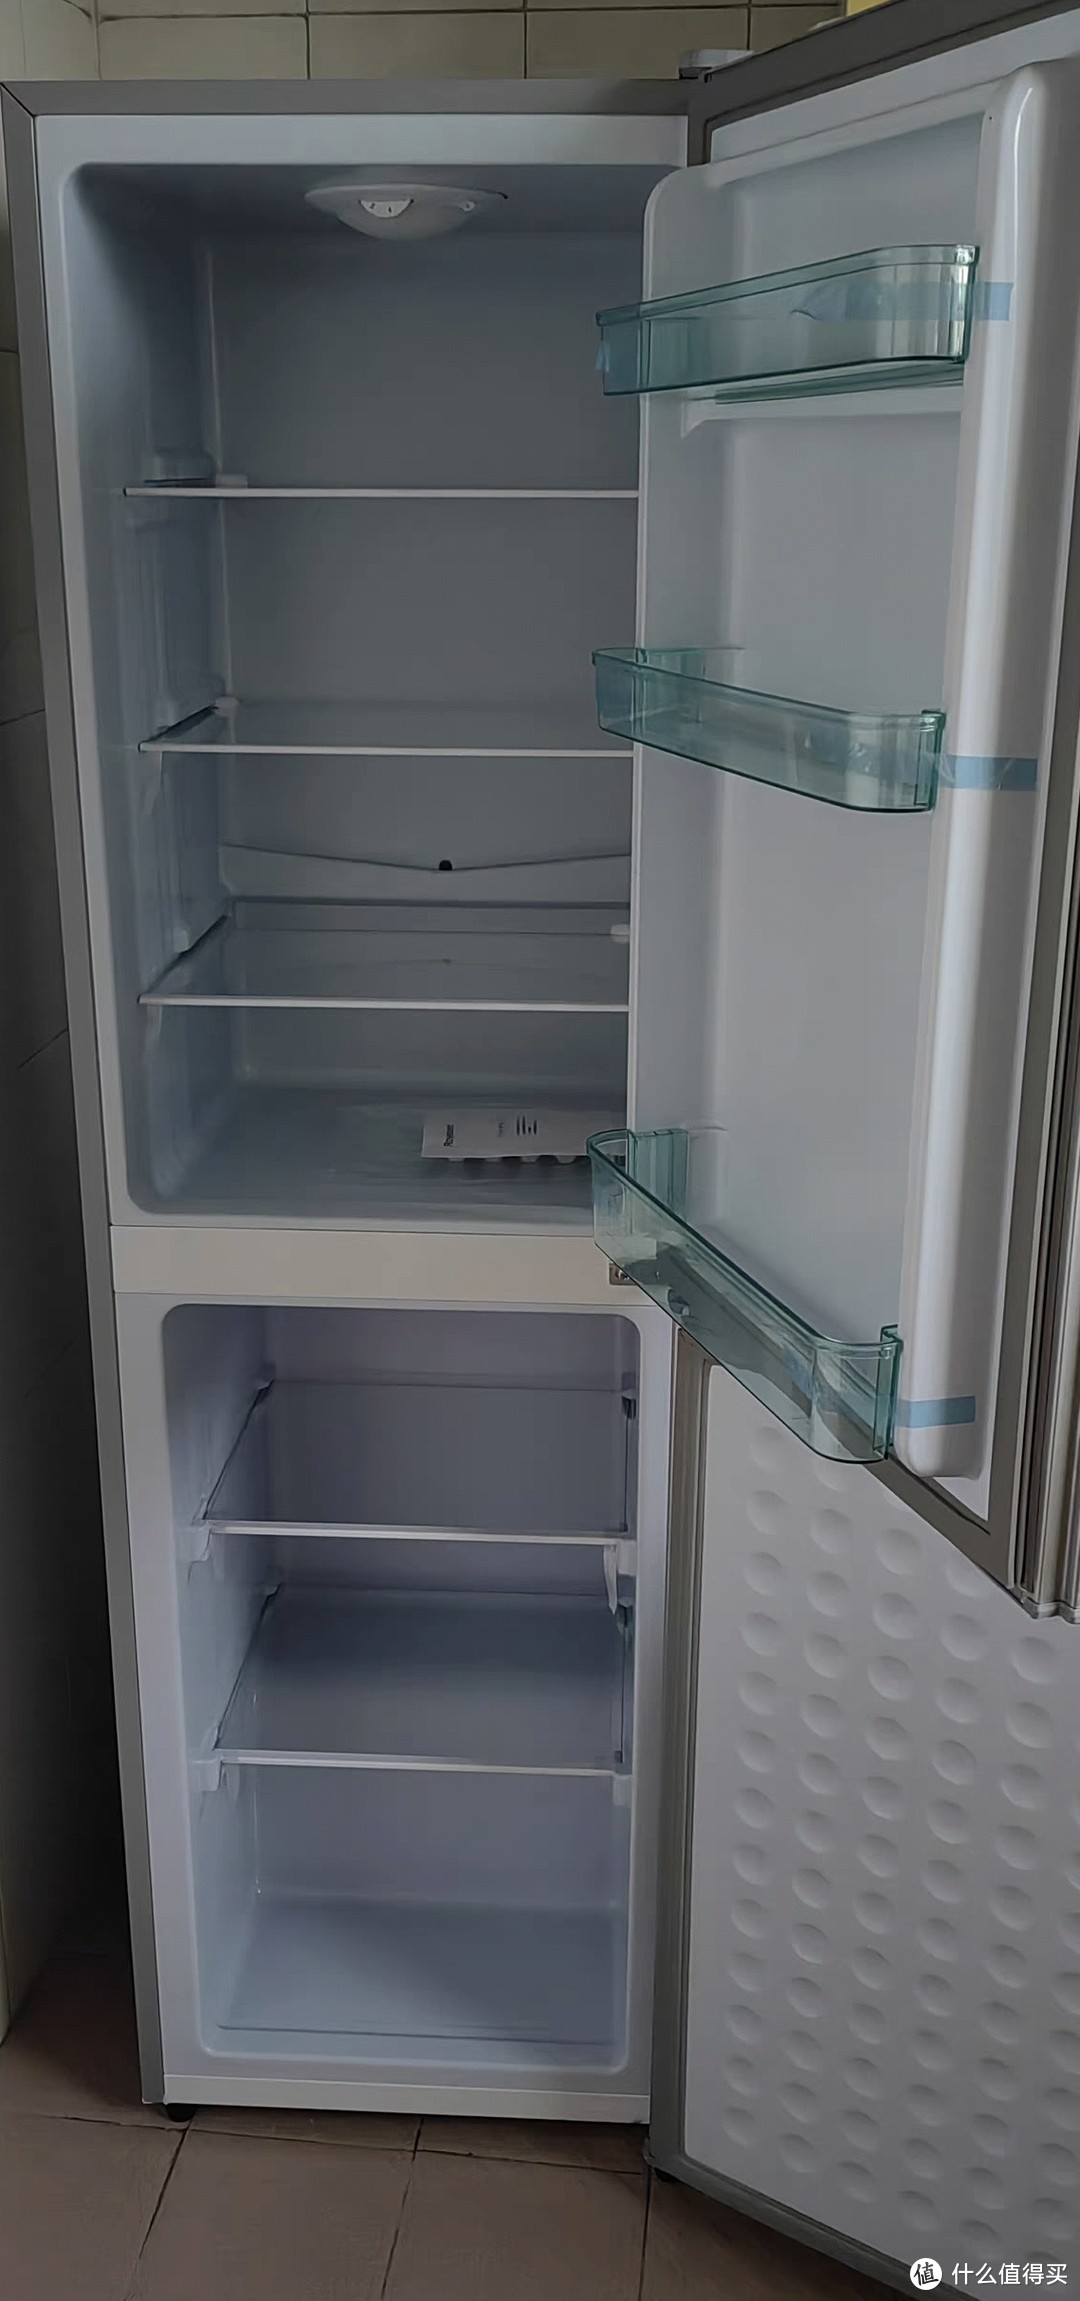 大件家电冰箱怎么样呢？